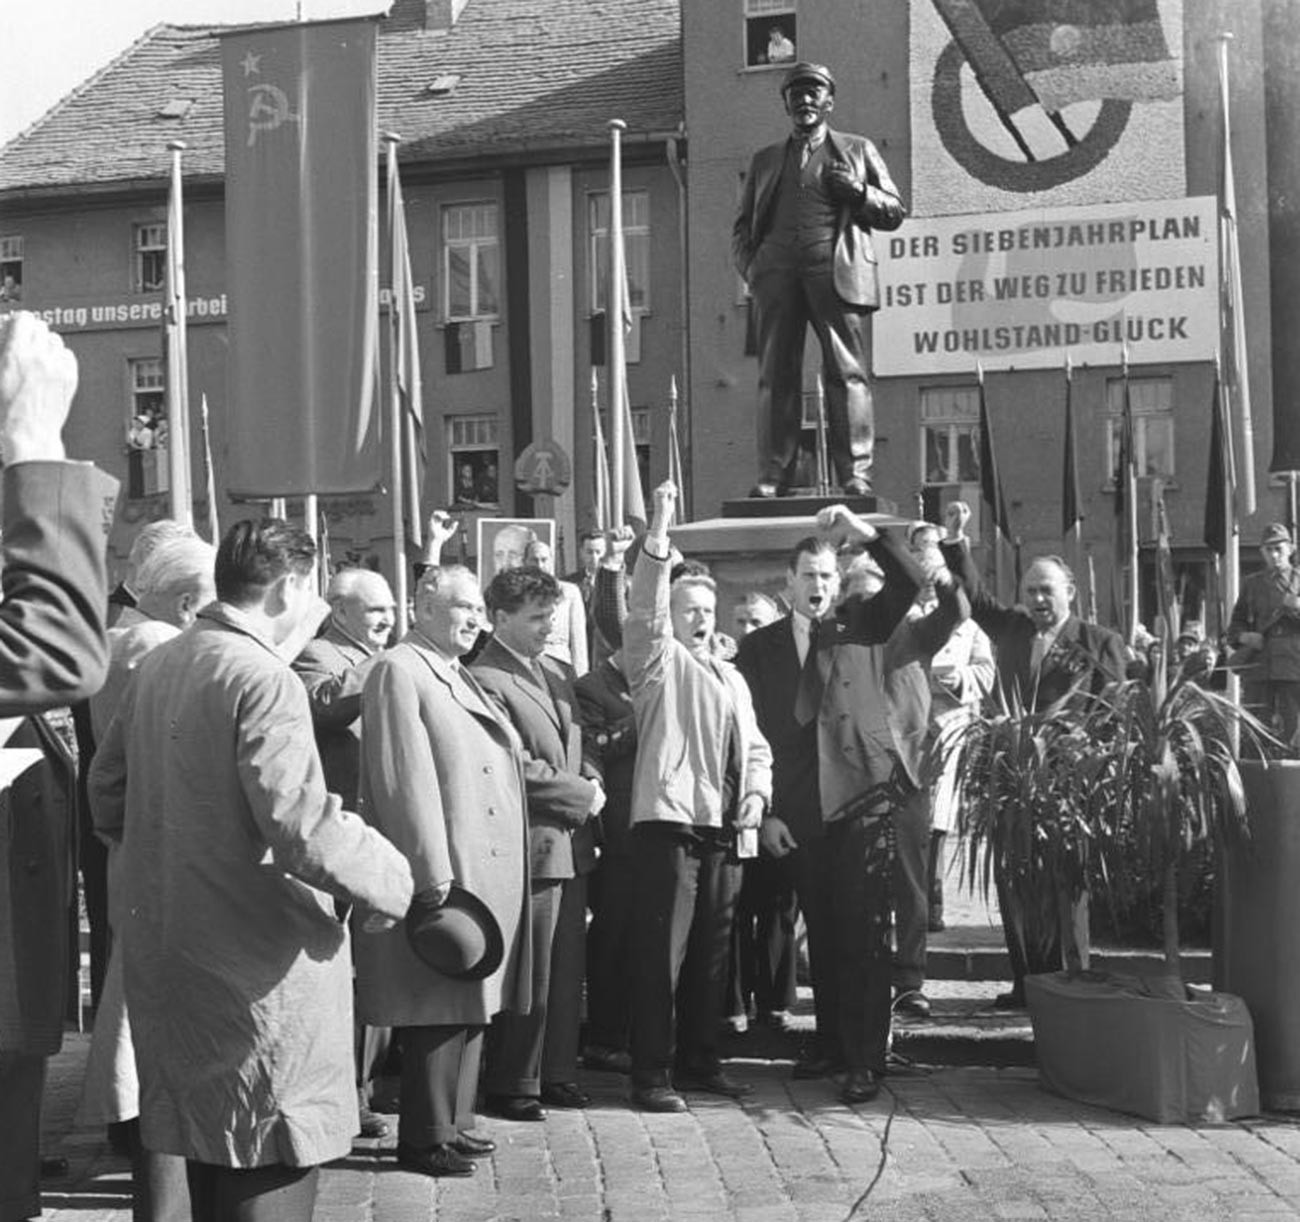 La delegación soviética en Eisleben, República Democrática Alemana, 1959